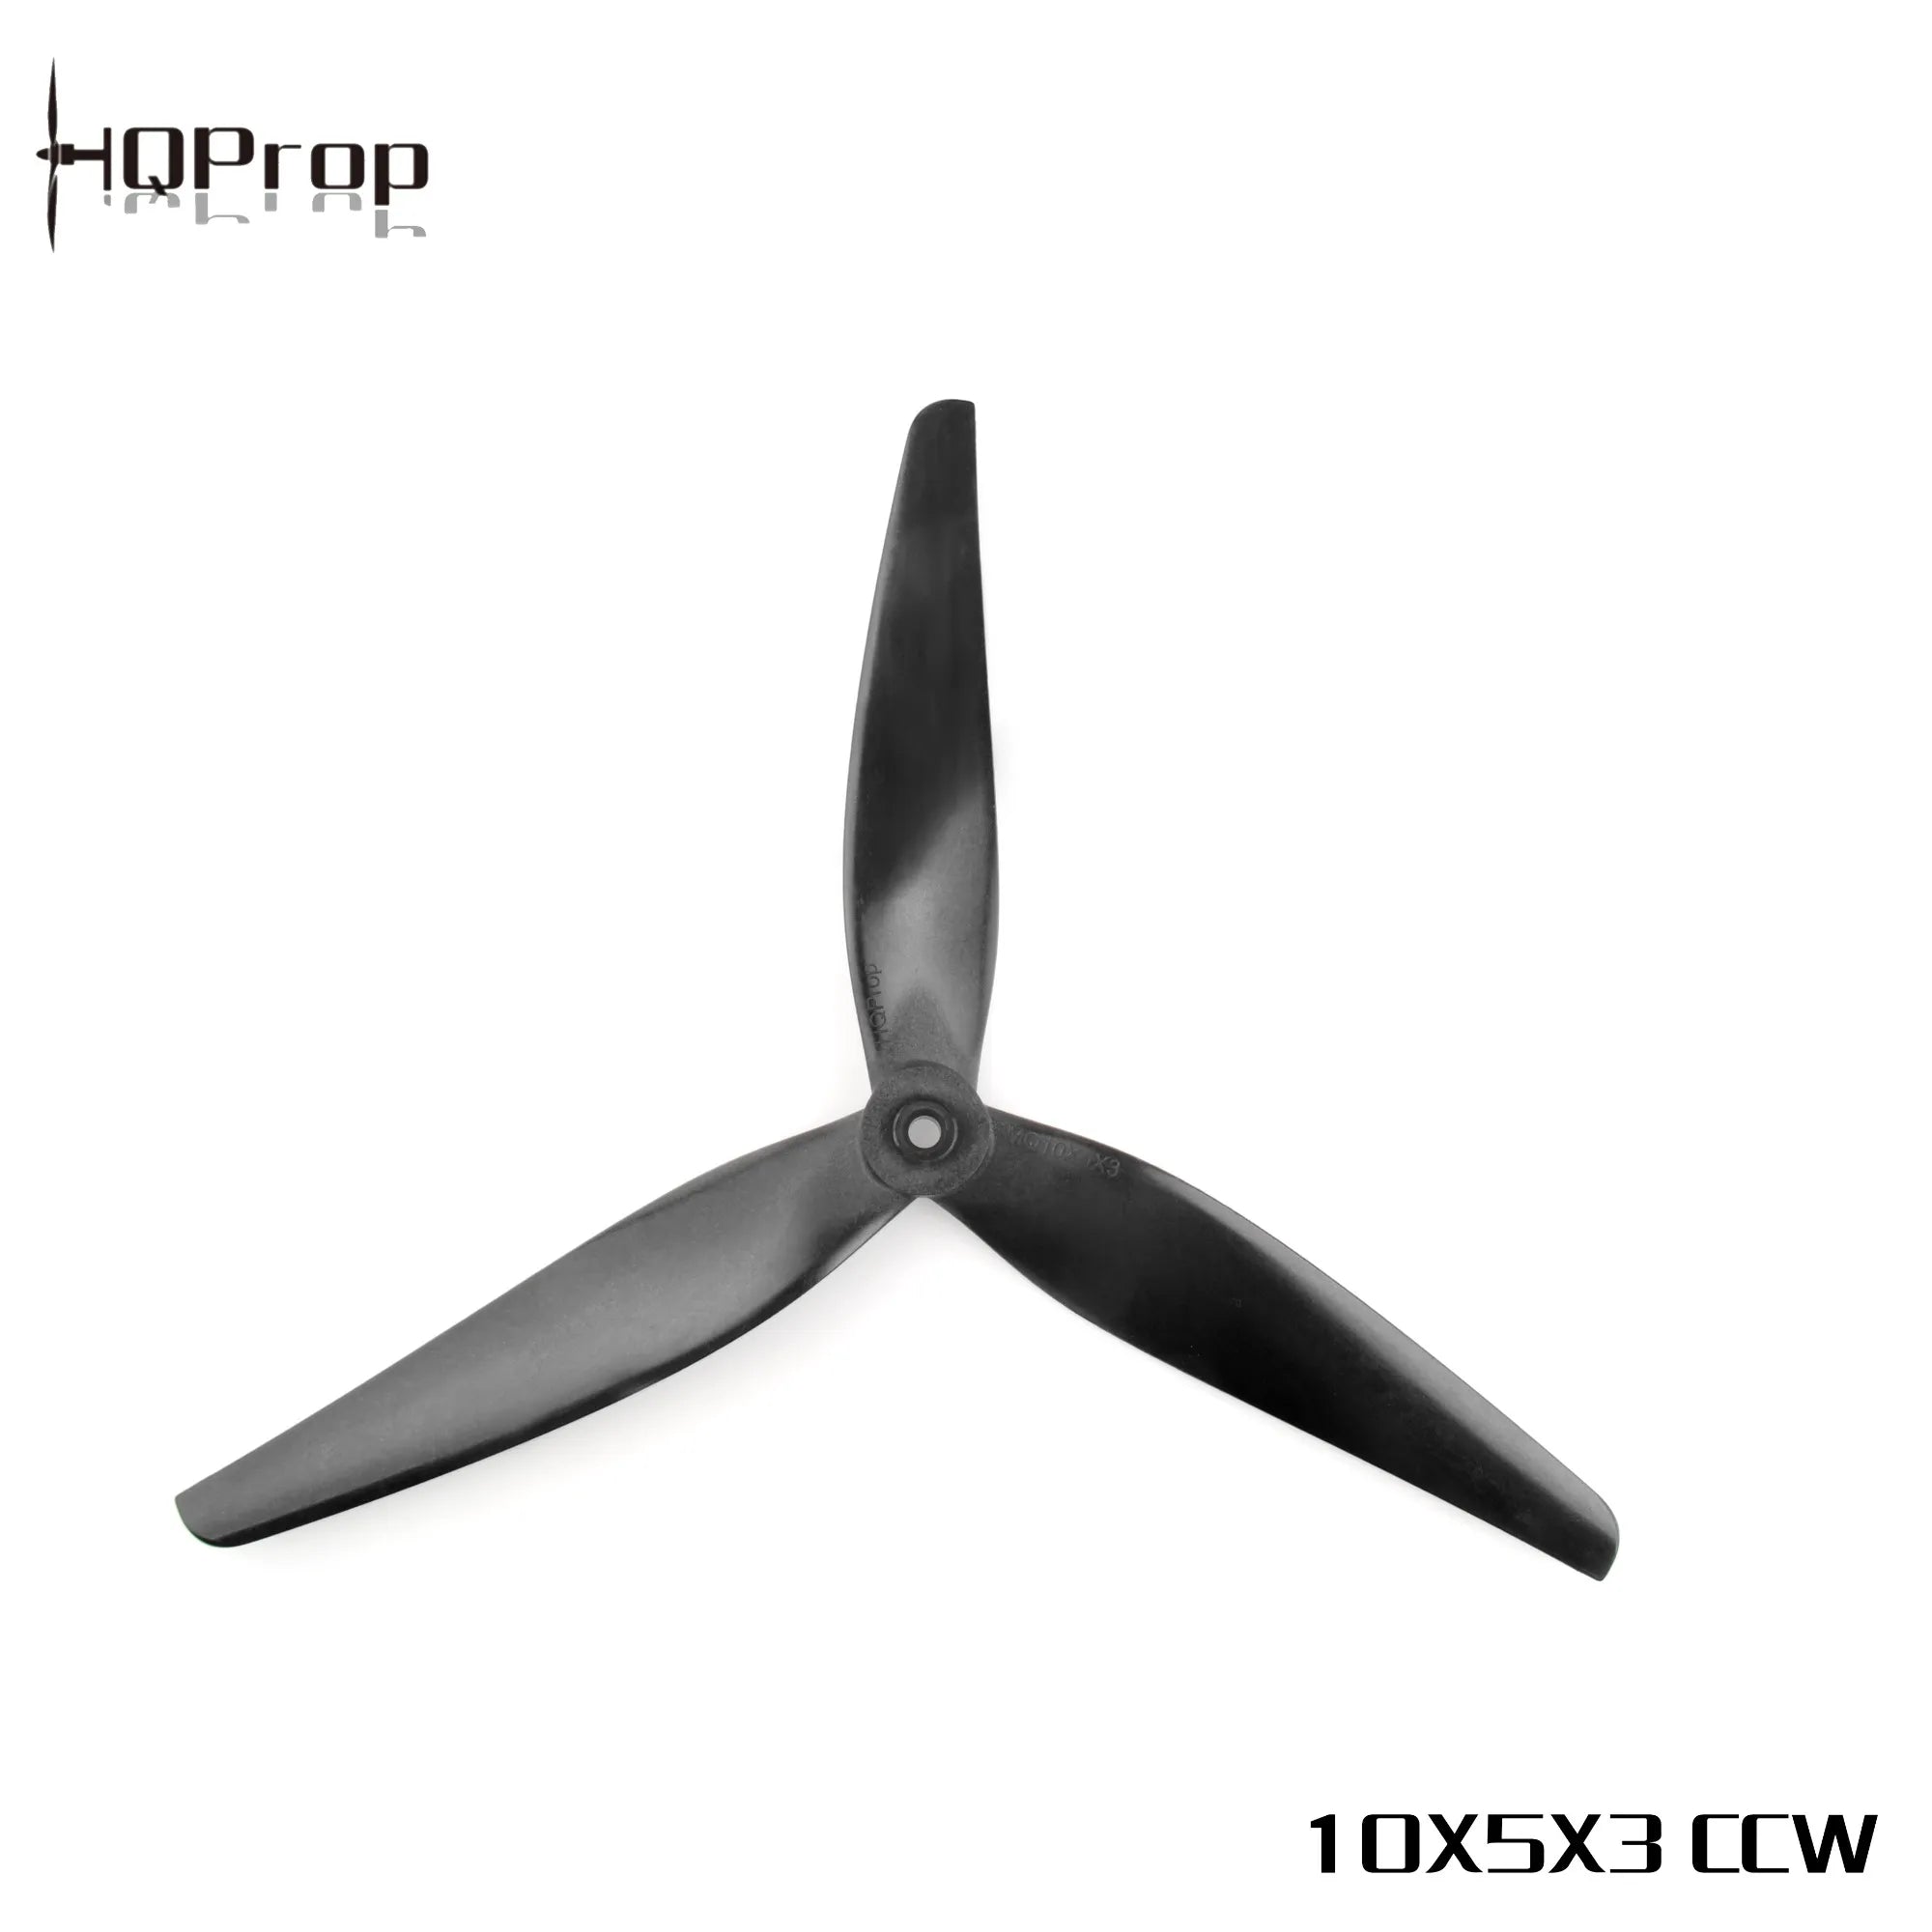 HQProp 10X5X3 CCW Propeller